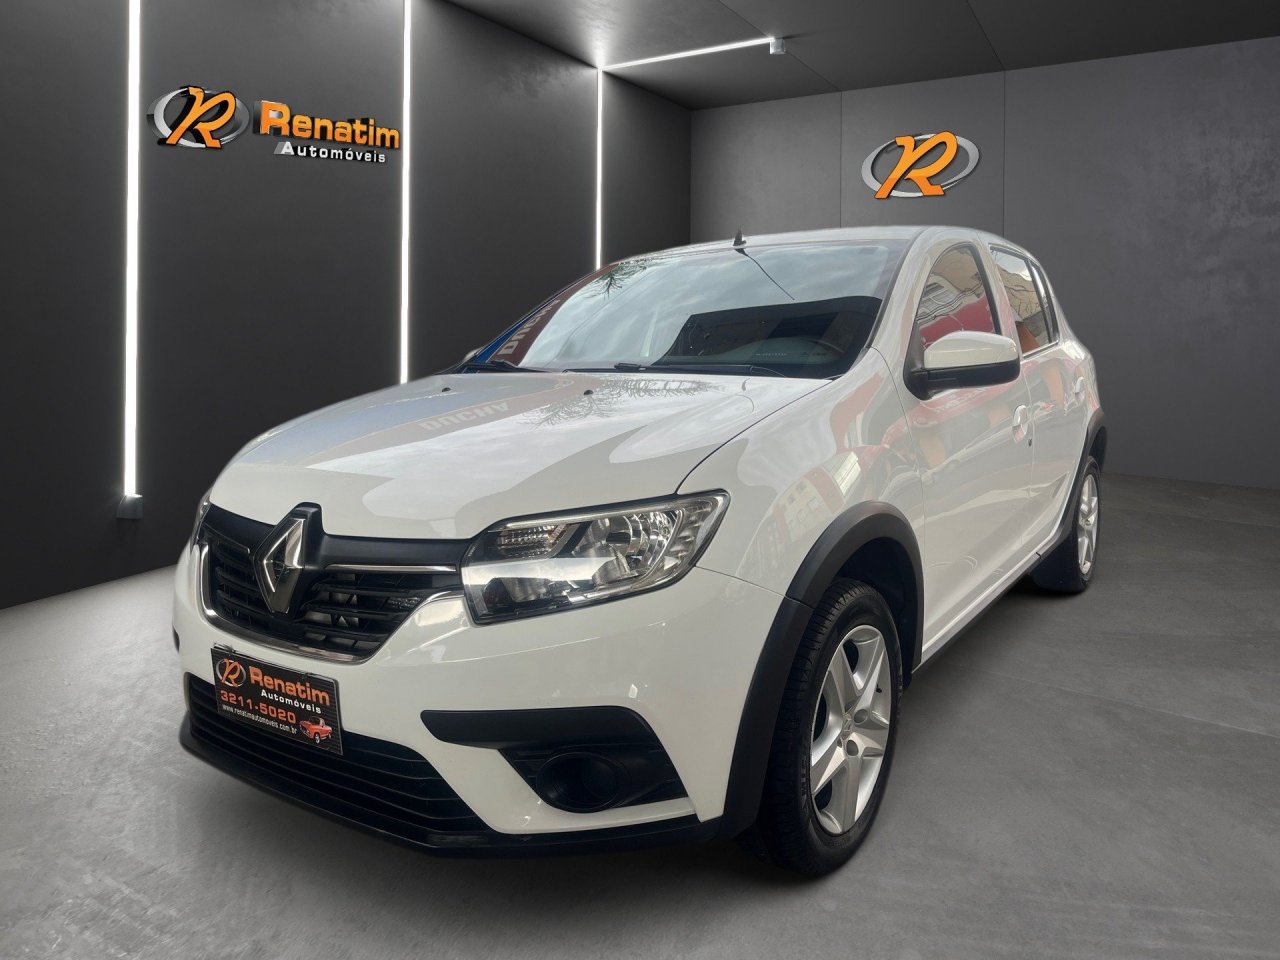 Renault SANDERO Zen Flex 1.6 16V 5p Aut.